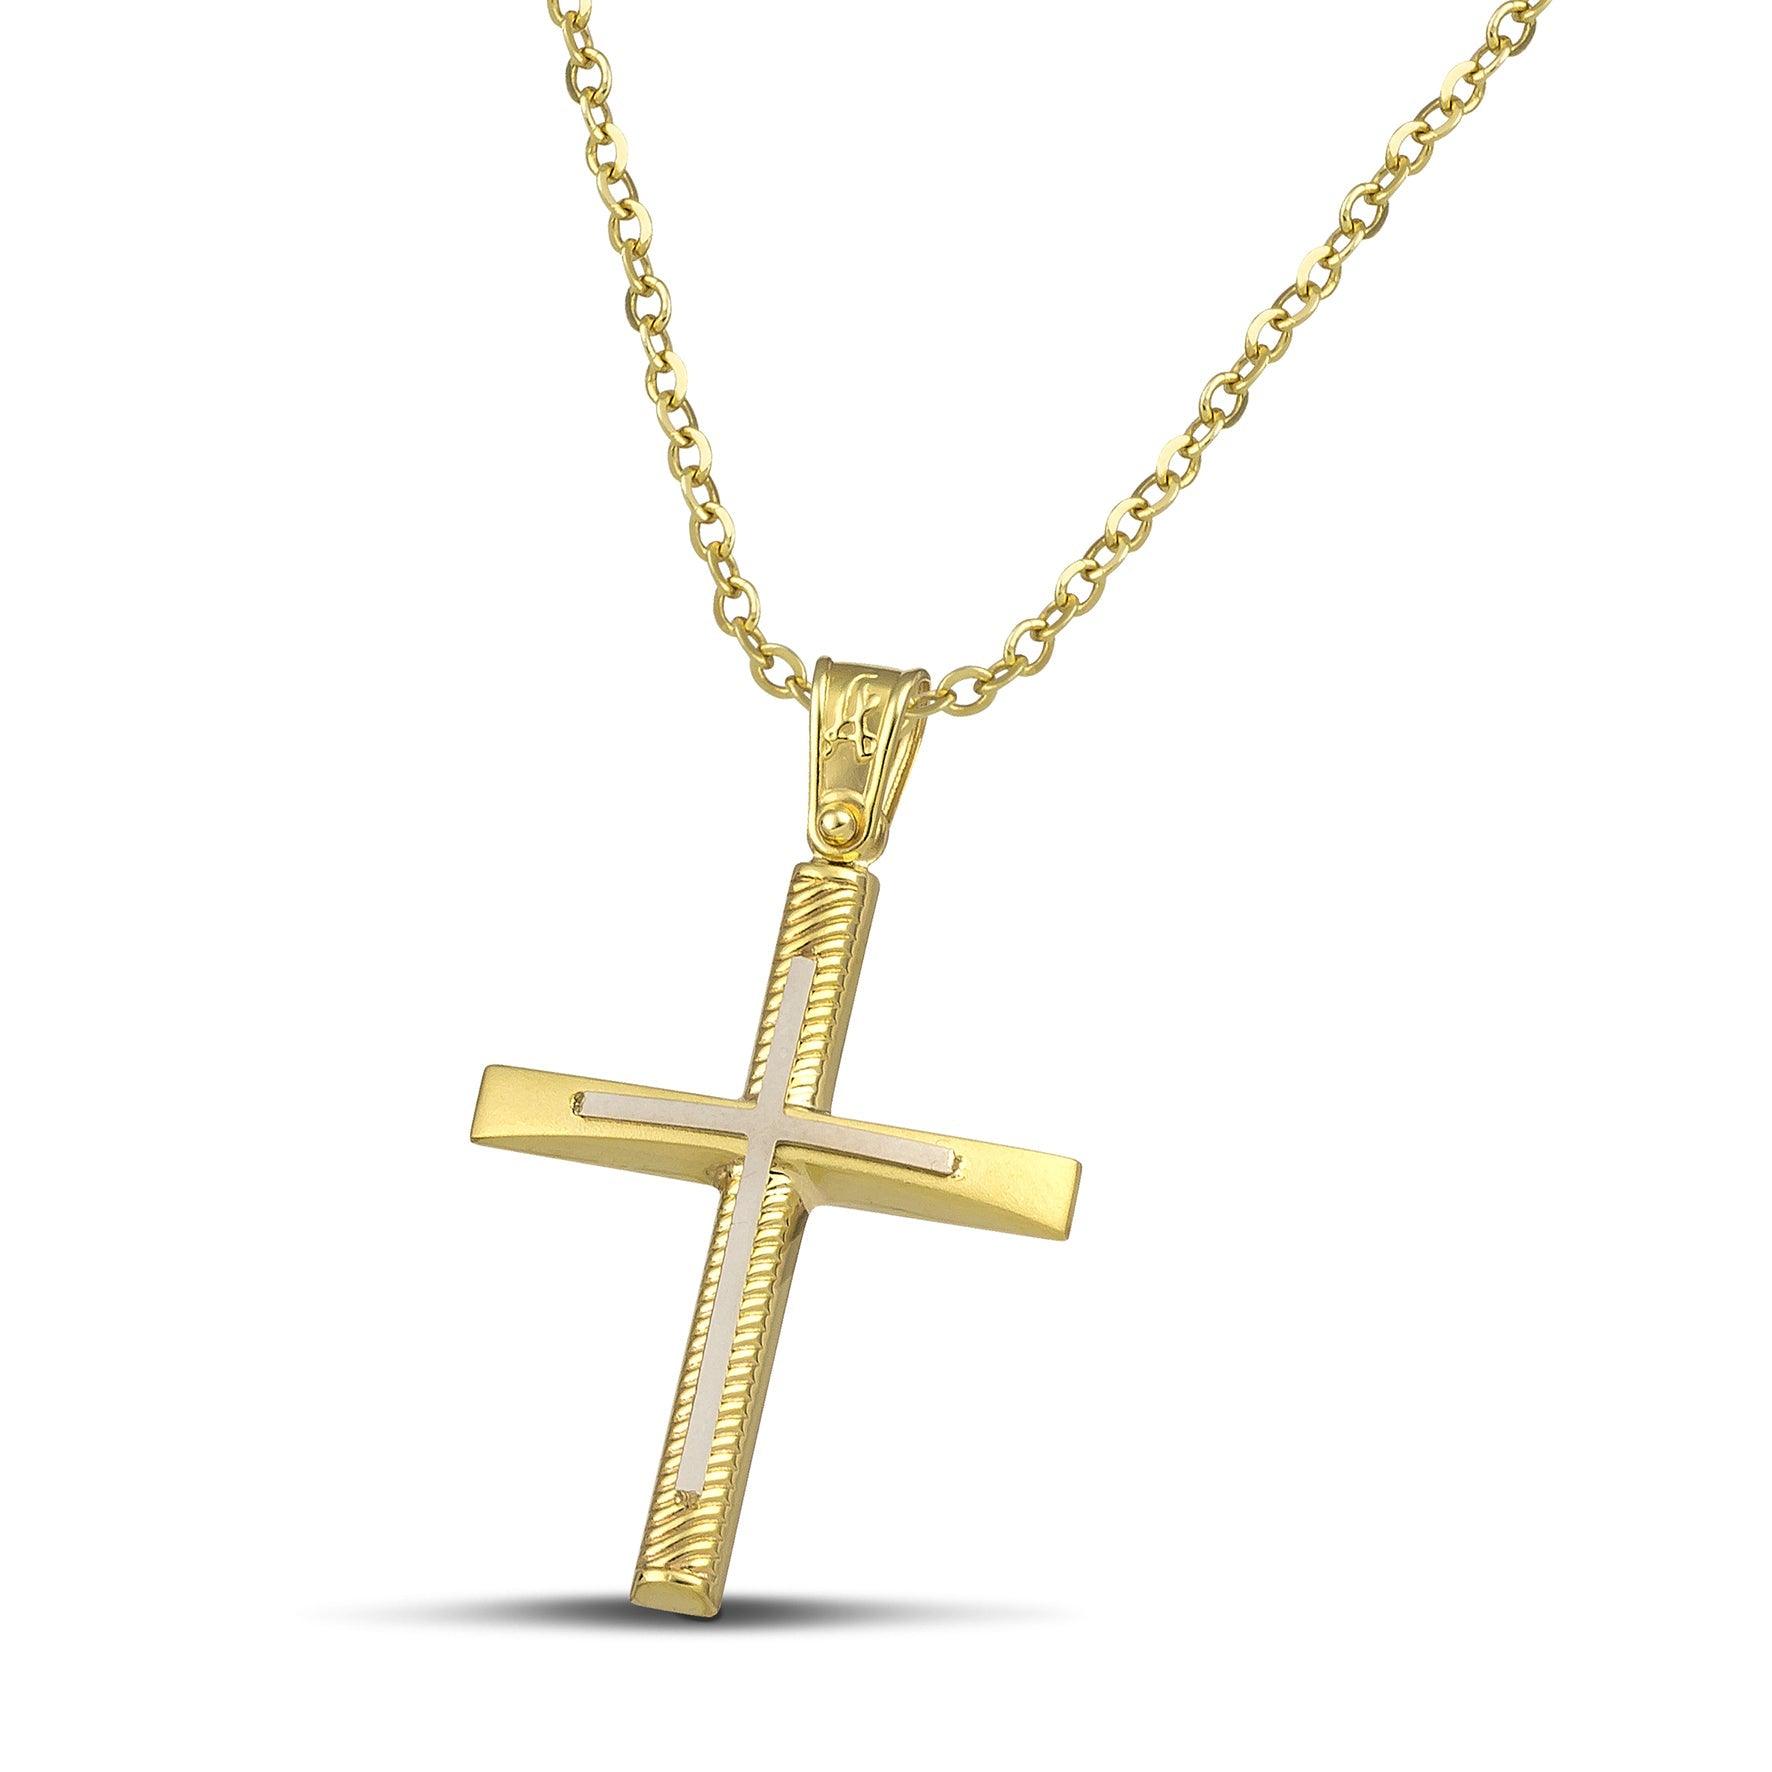 Σταυρός βάπτισης χρυσός Κ14 για γυναίκα. Διαθέτει σκαλιστά σχέδια και λευκόχρυσο σταυρό, με λεπτή αλυσίδα.